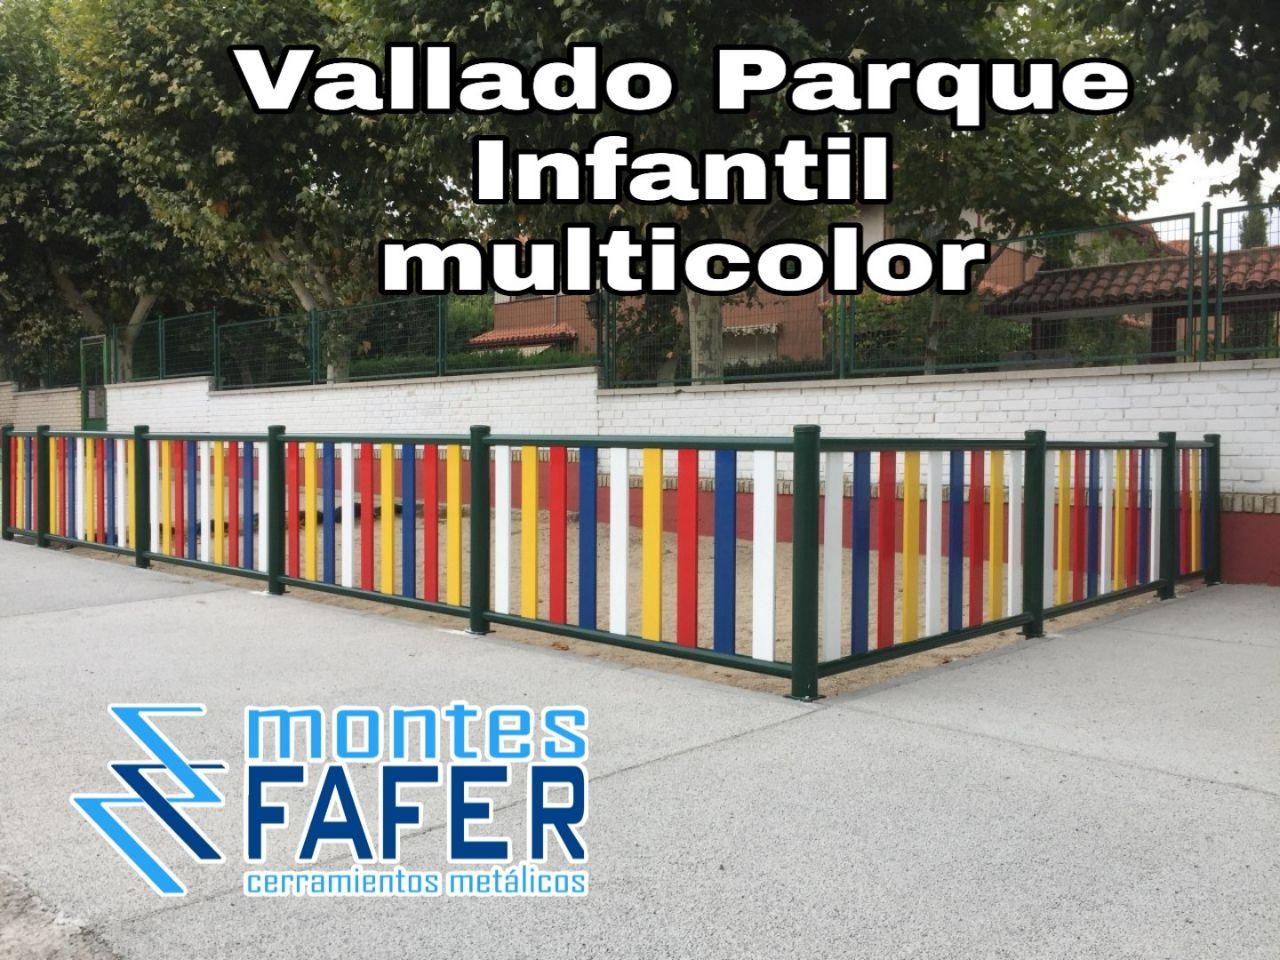 Vallado multicolor parques infantiles MontesFafer